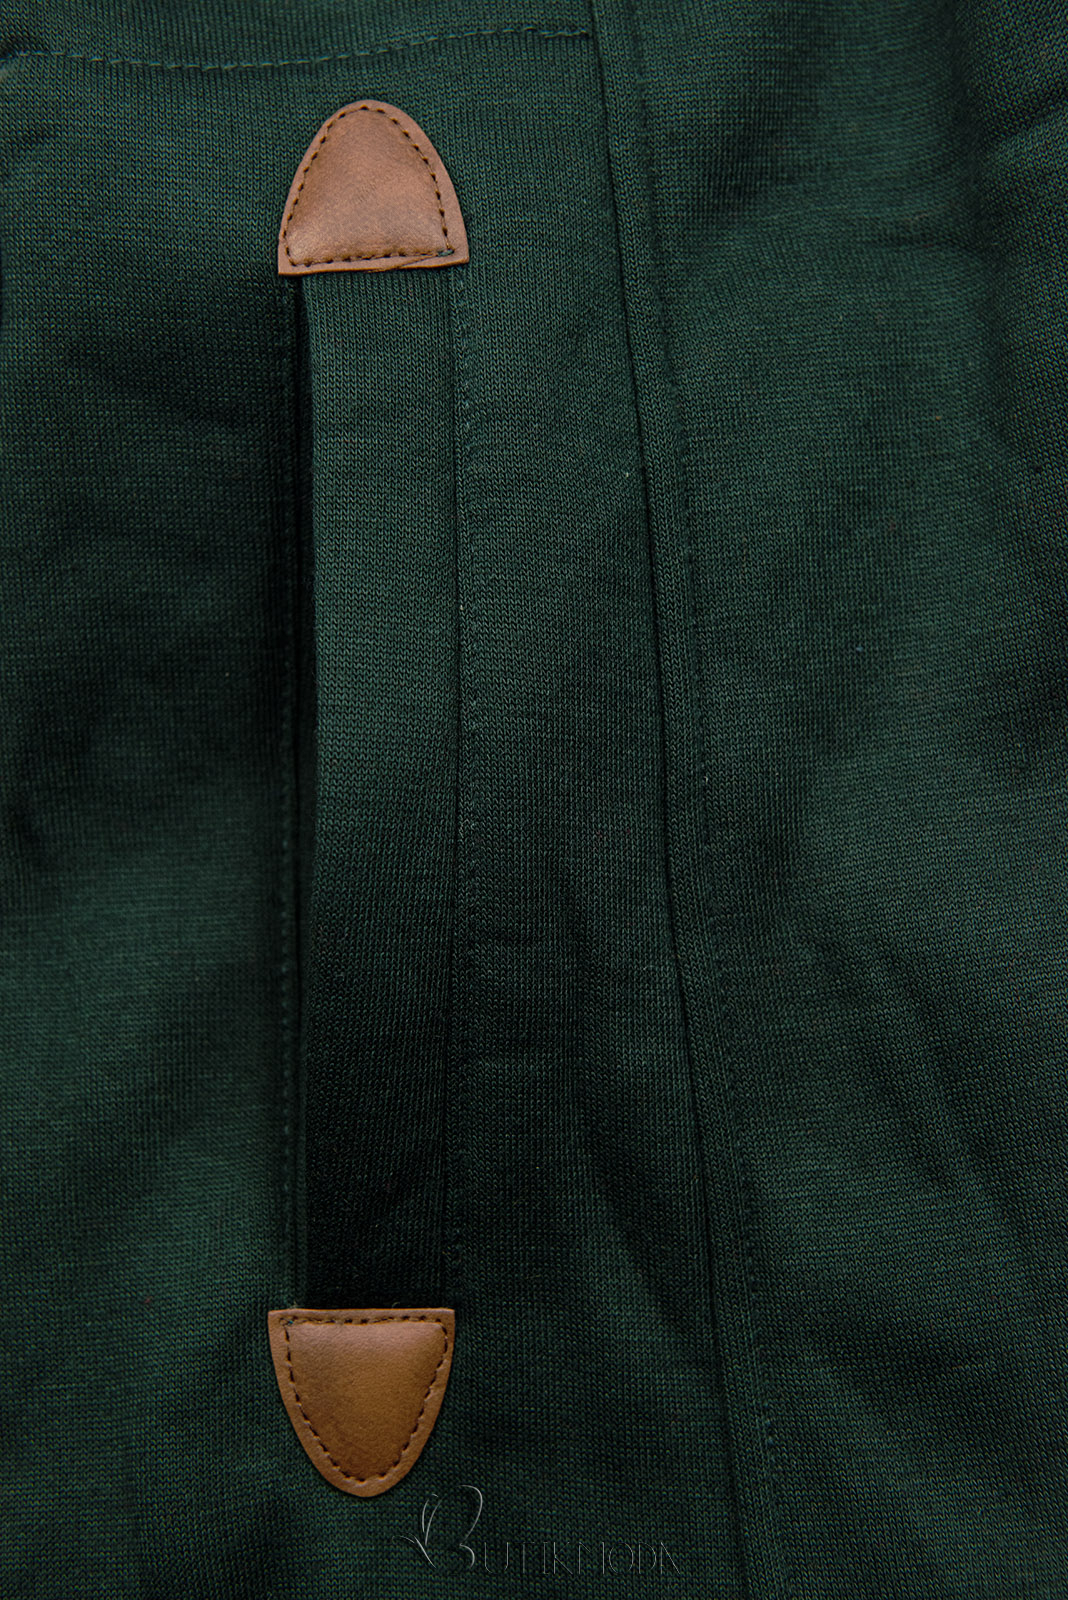 Smaragdzöld színű felső formázott derékkal